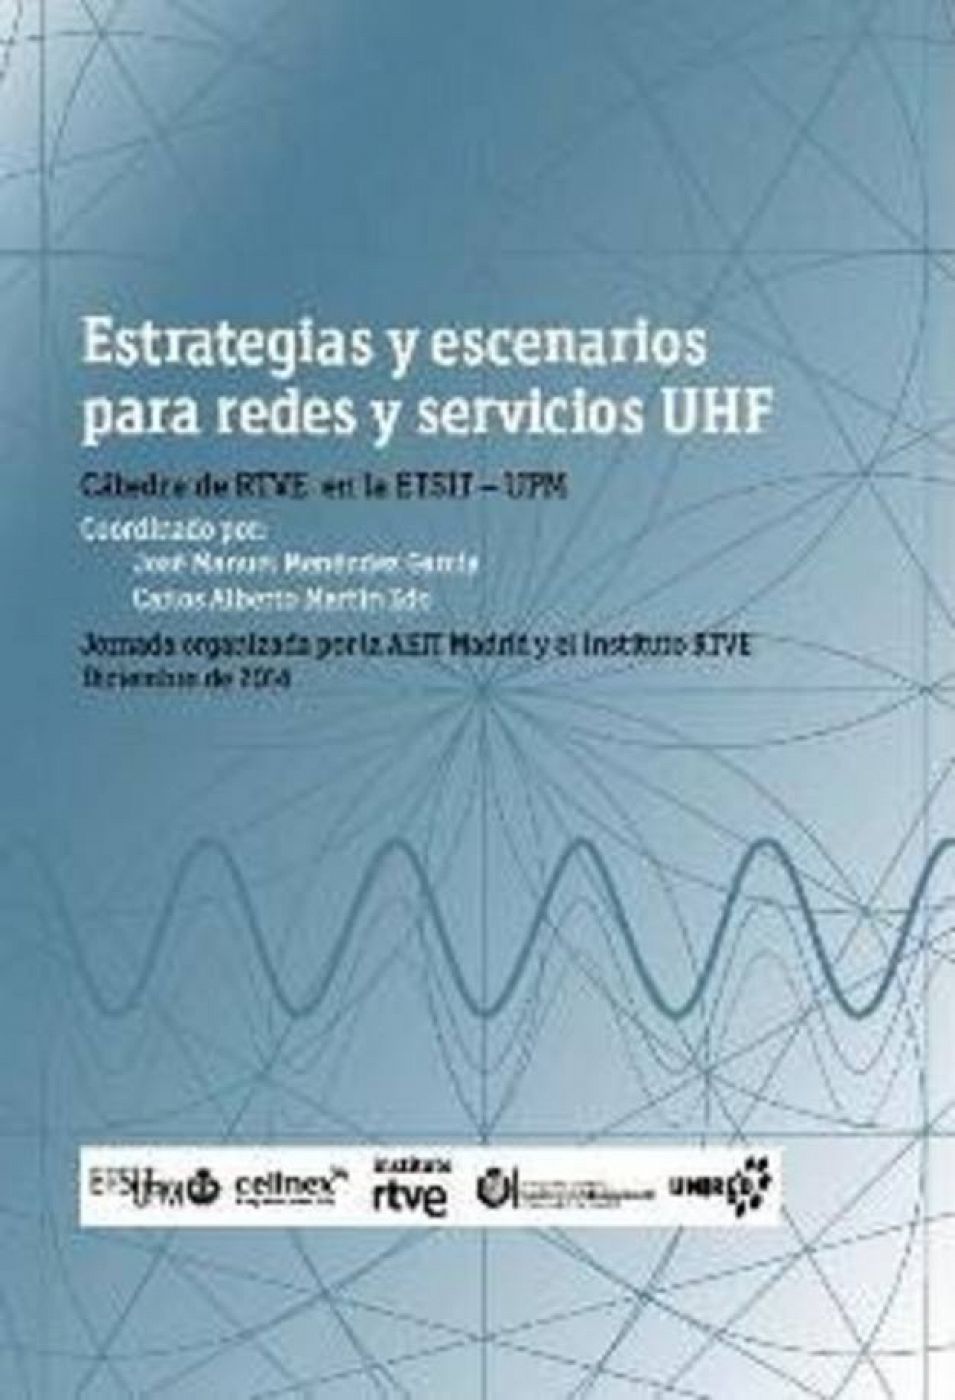 Estrategias y escenarios para redes y servicios UHF